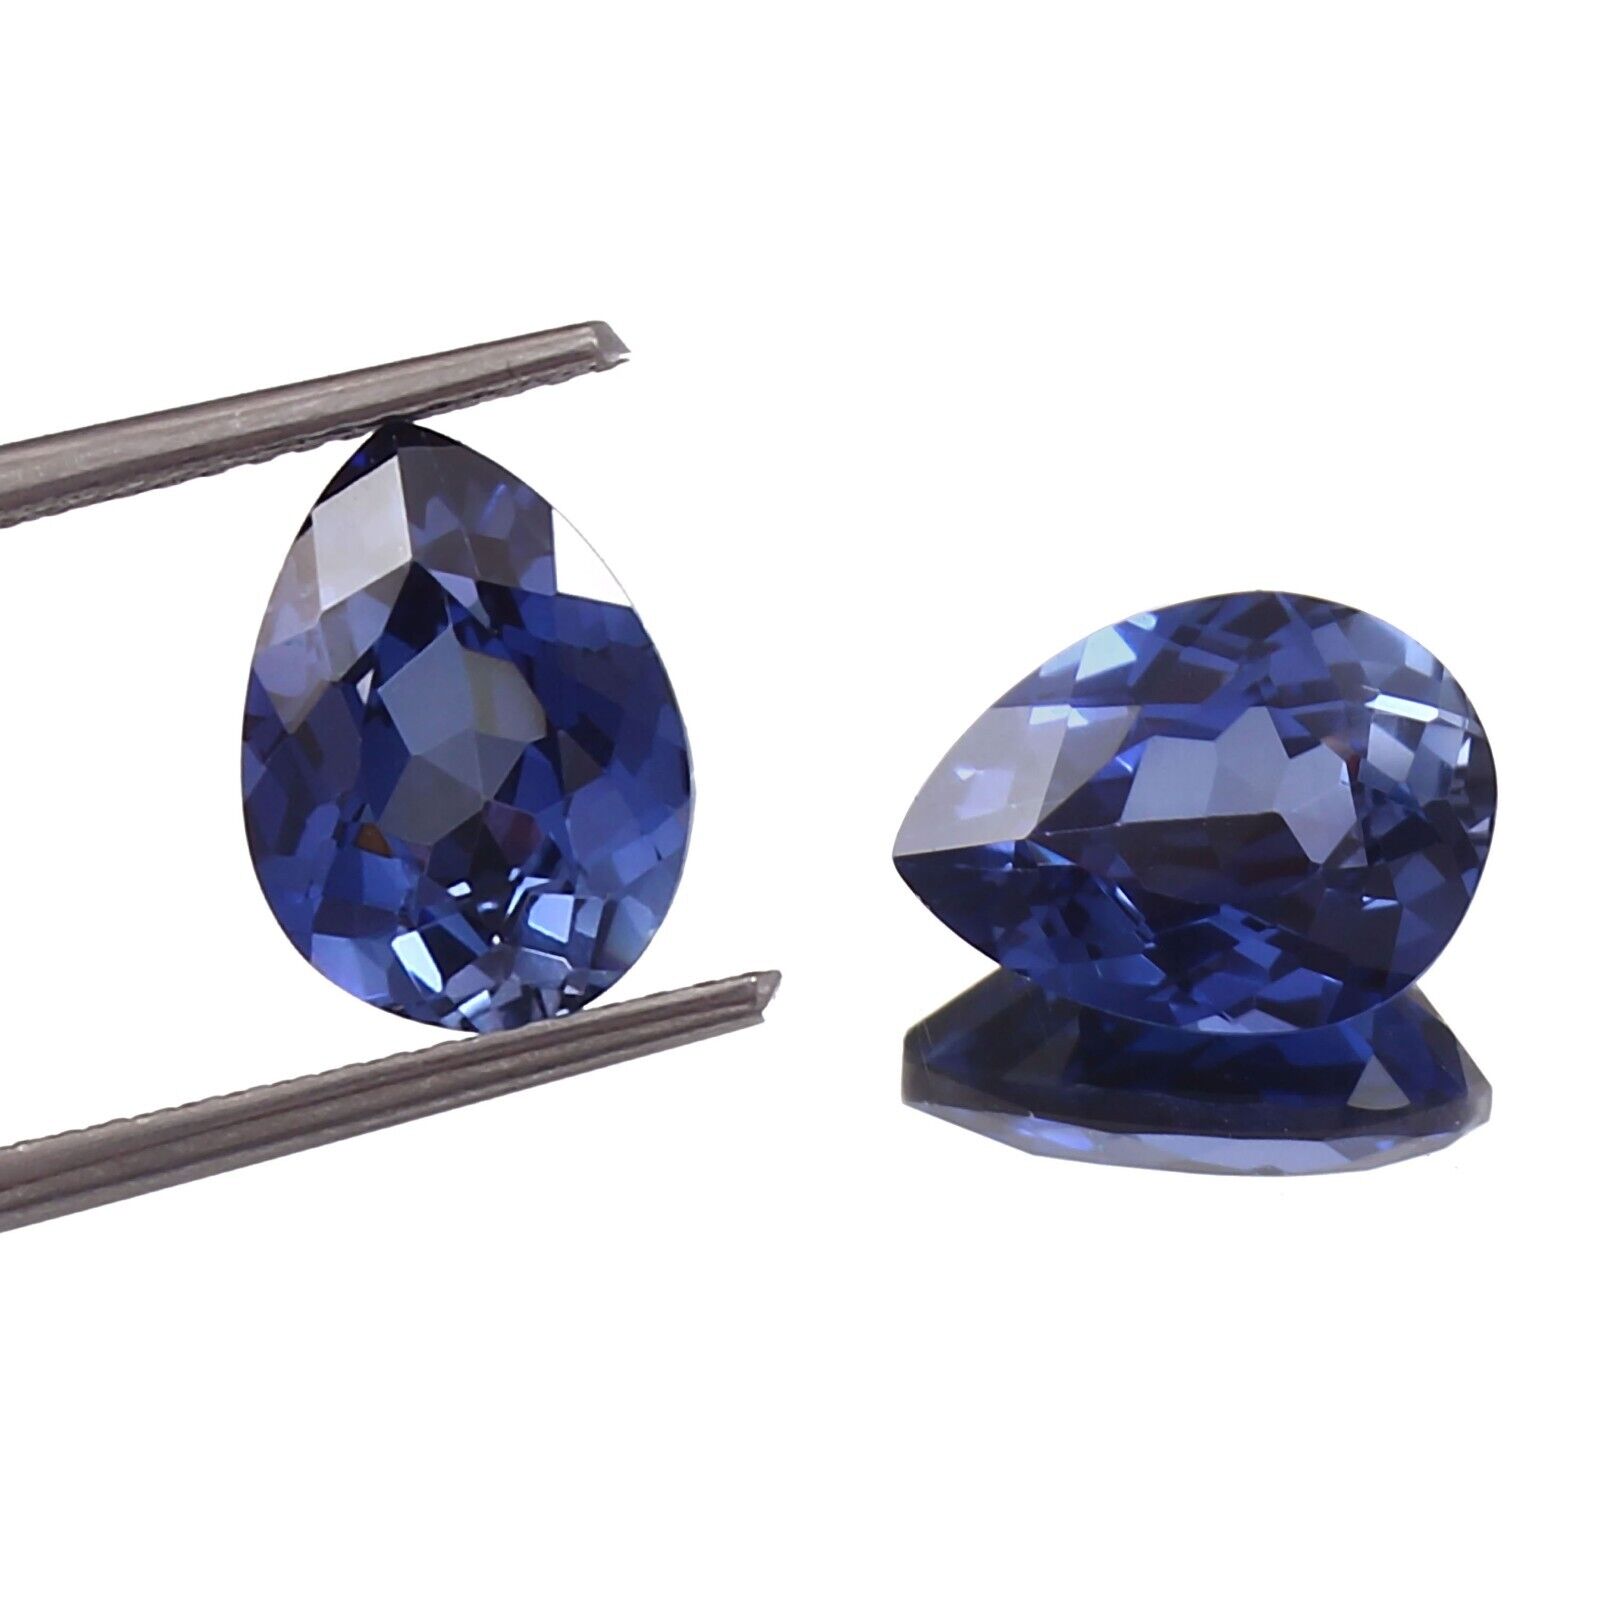 14 x 12 MM Natural Ceylon Blue Sapphire Pear Cut Loose Gemstone Matching Pair